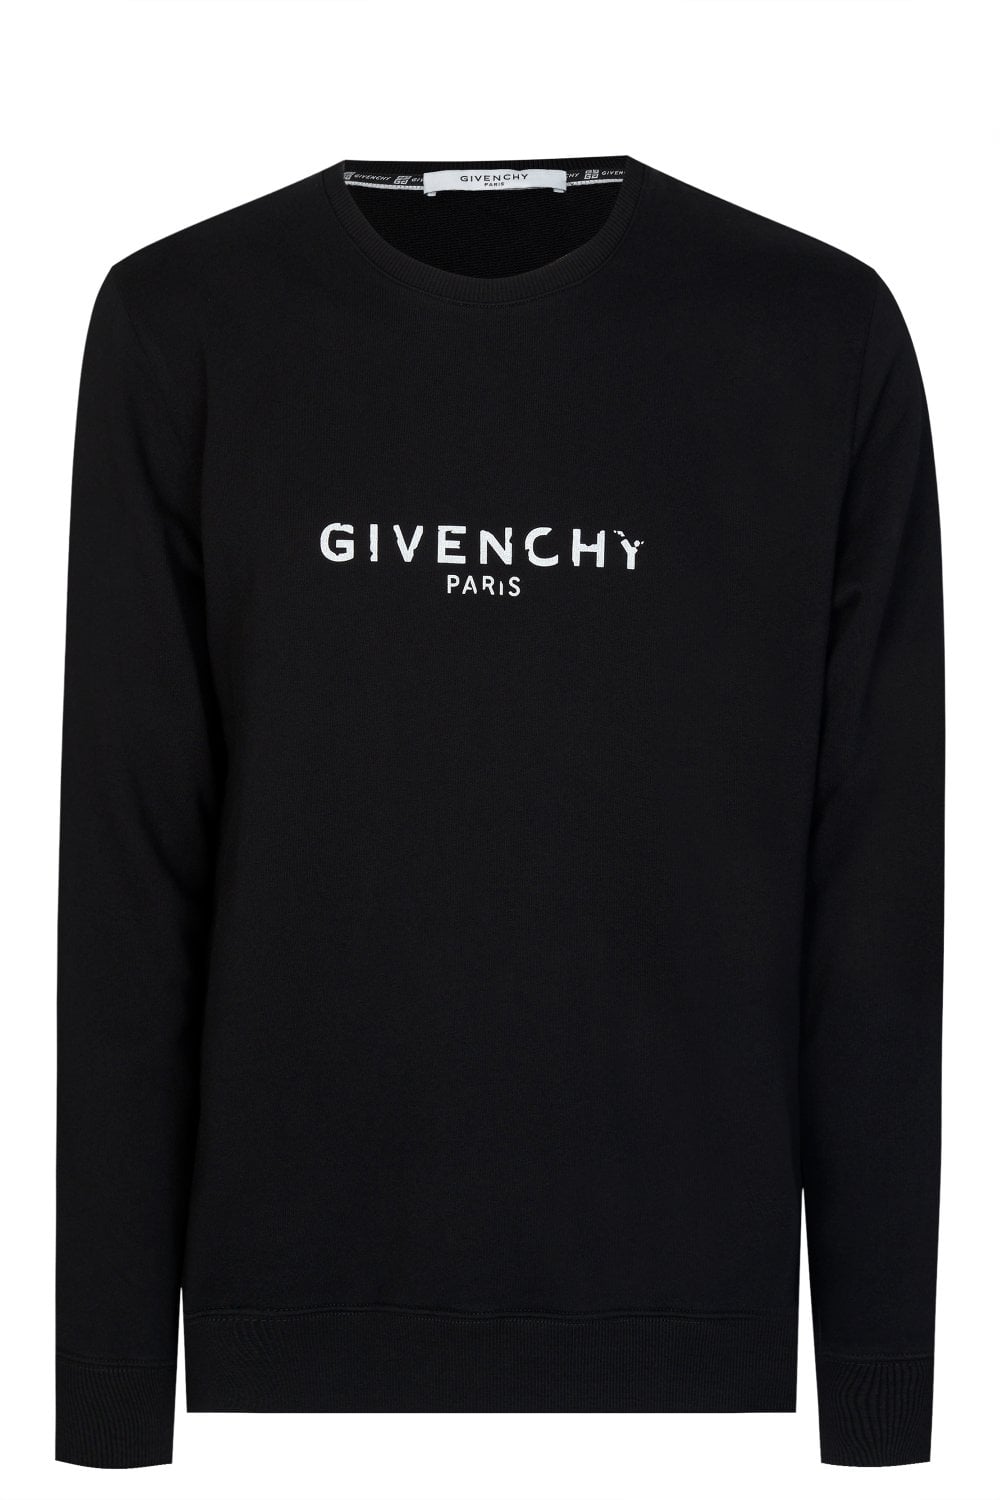 Givenchy Paris Vintage Signature Broken Logo Sweatshirt in Black